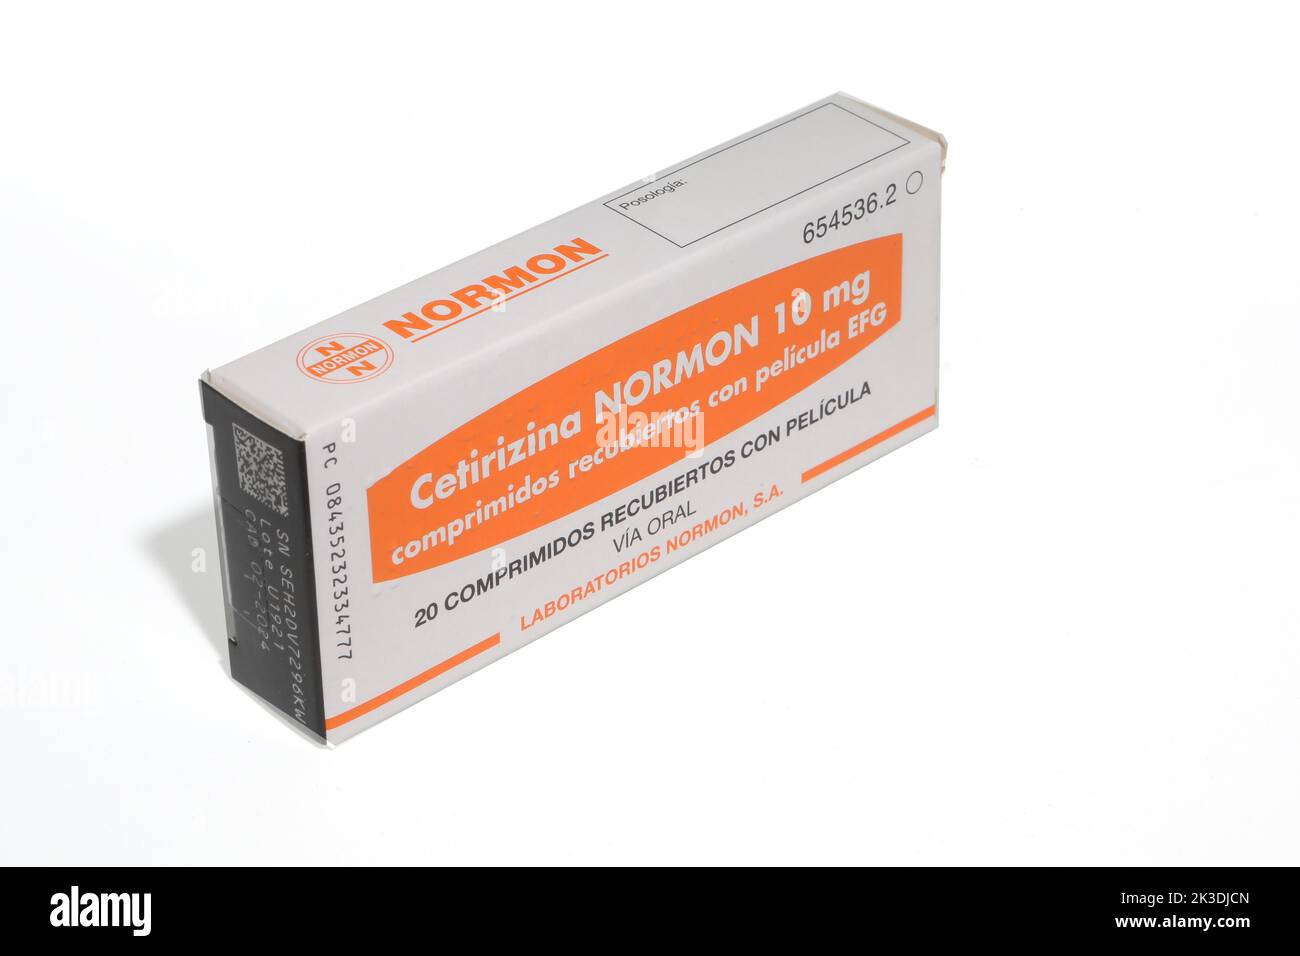 Cetirizina normon 10 mg comprimidos recubiertos con pelicula efg immagini e  fotografie stock ad alta risoluzione - Alamy